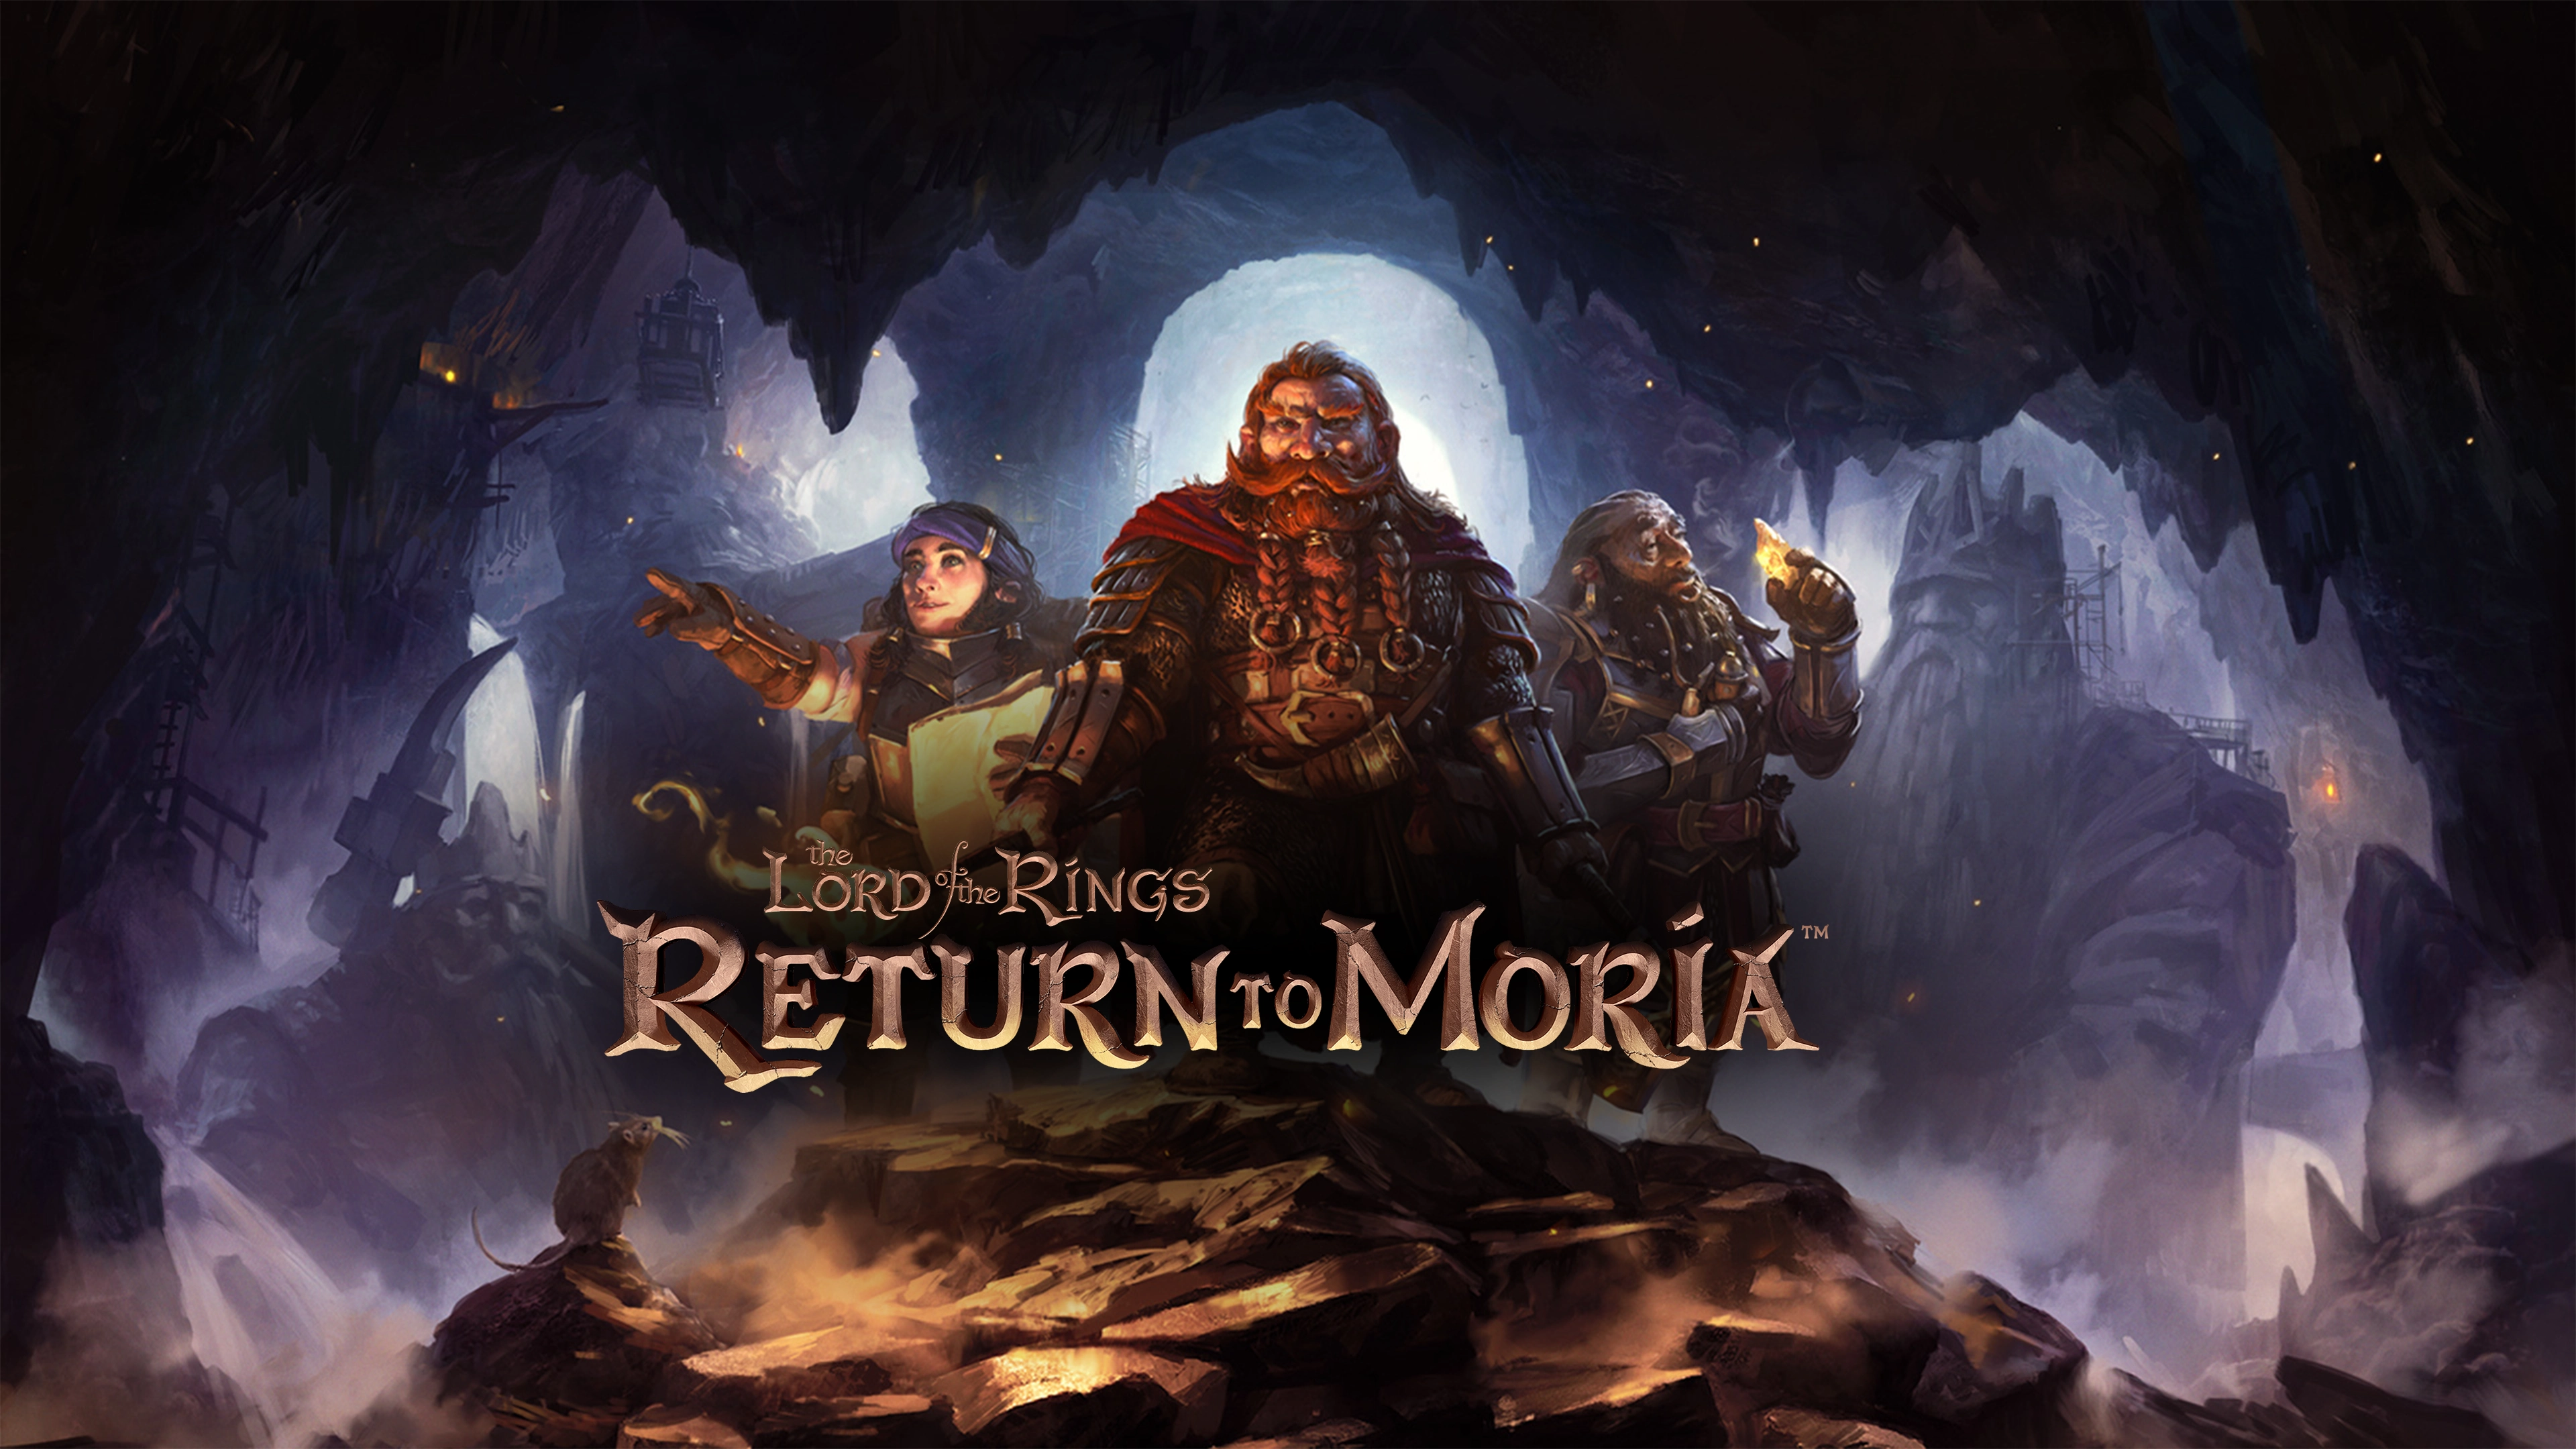 Indulj el egy új kalandra, hogy visszaszerezd Khazad-dűm elveszett királyságát A Gyűrűk Ura játékban: Return to Moria™, amely mostantól elérhető PC-n.